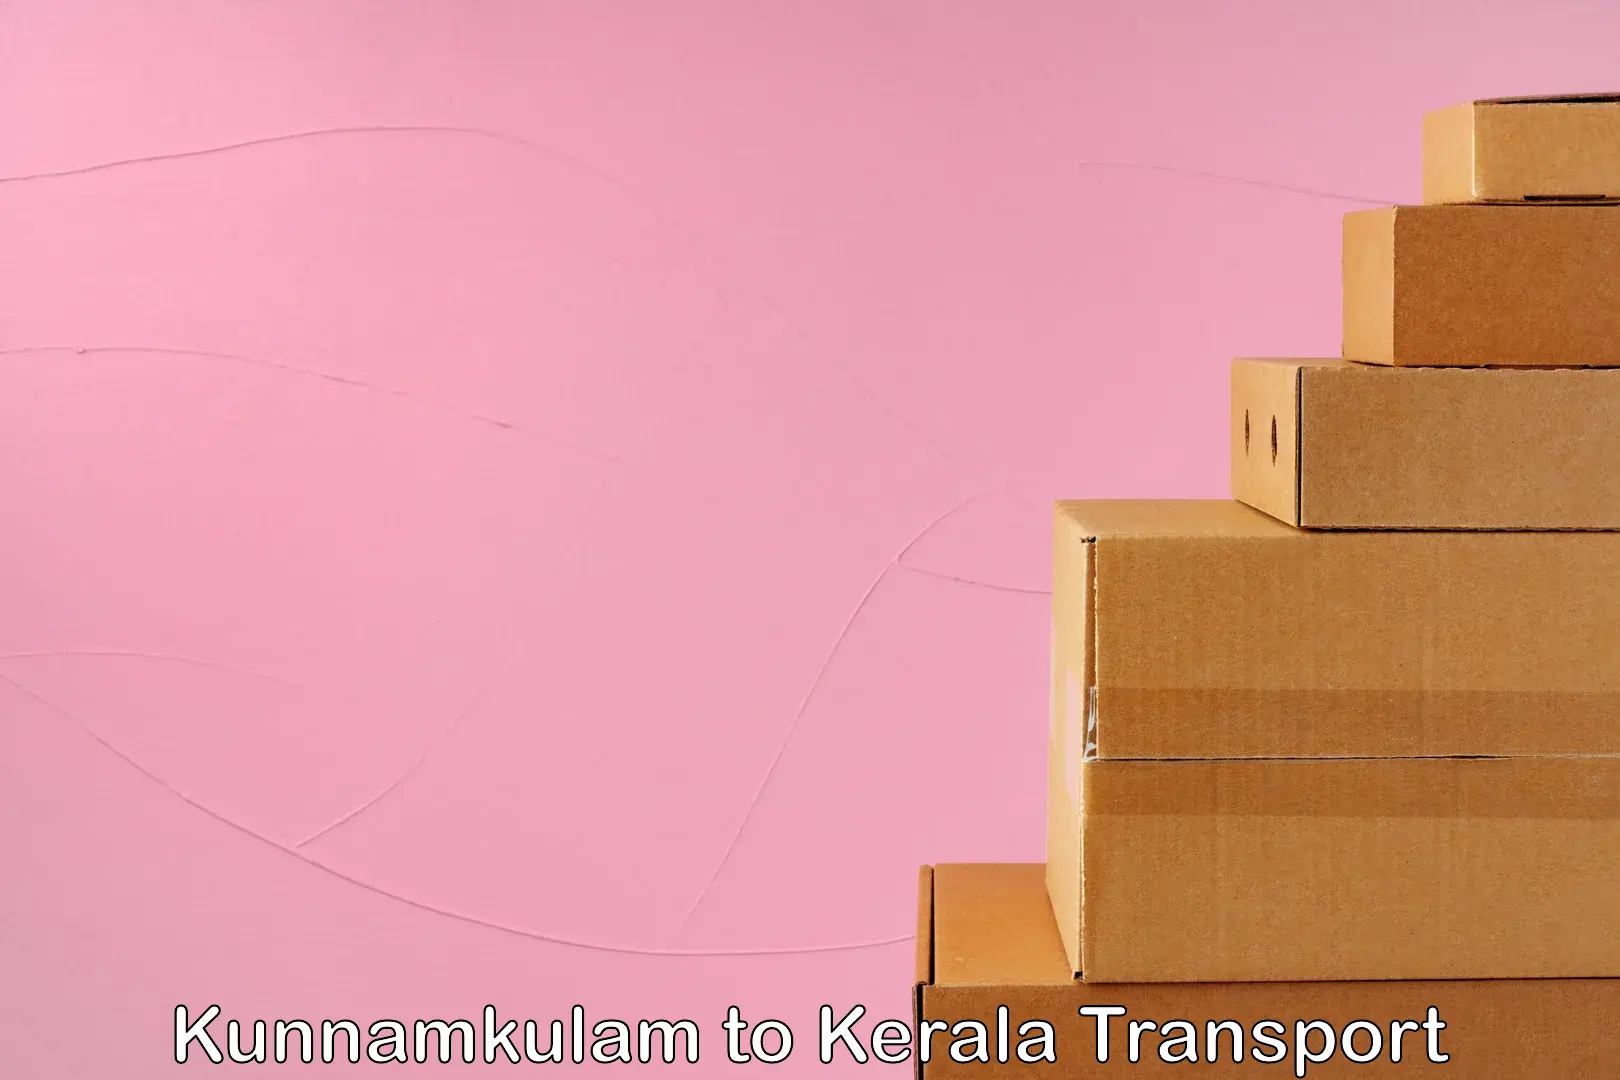 Daily transport service Kunnamkulam to Kakkur